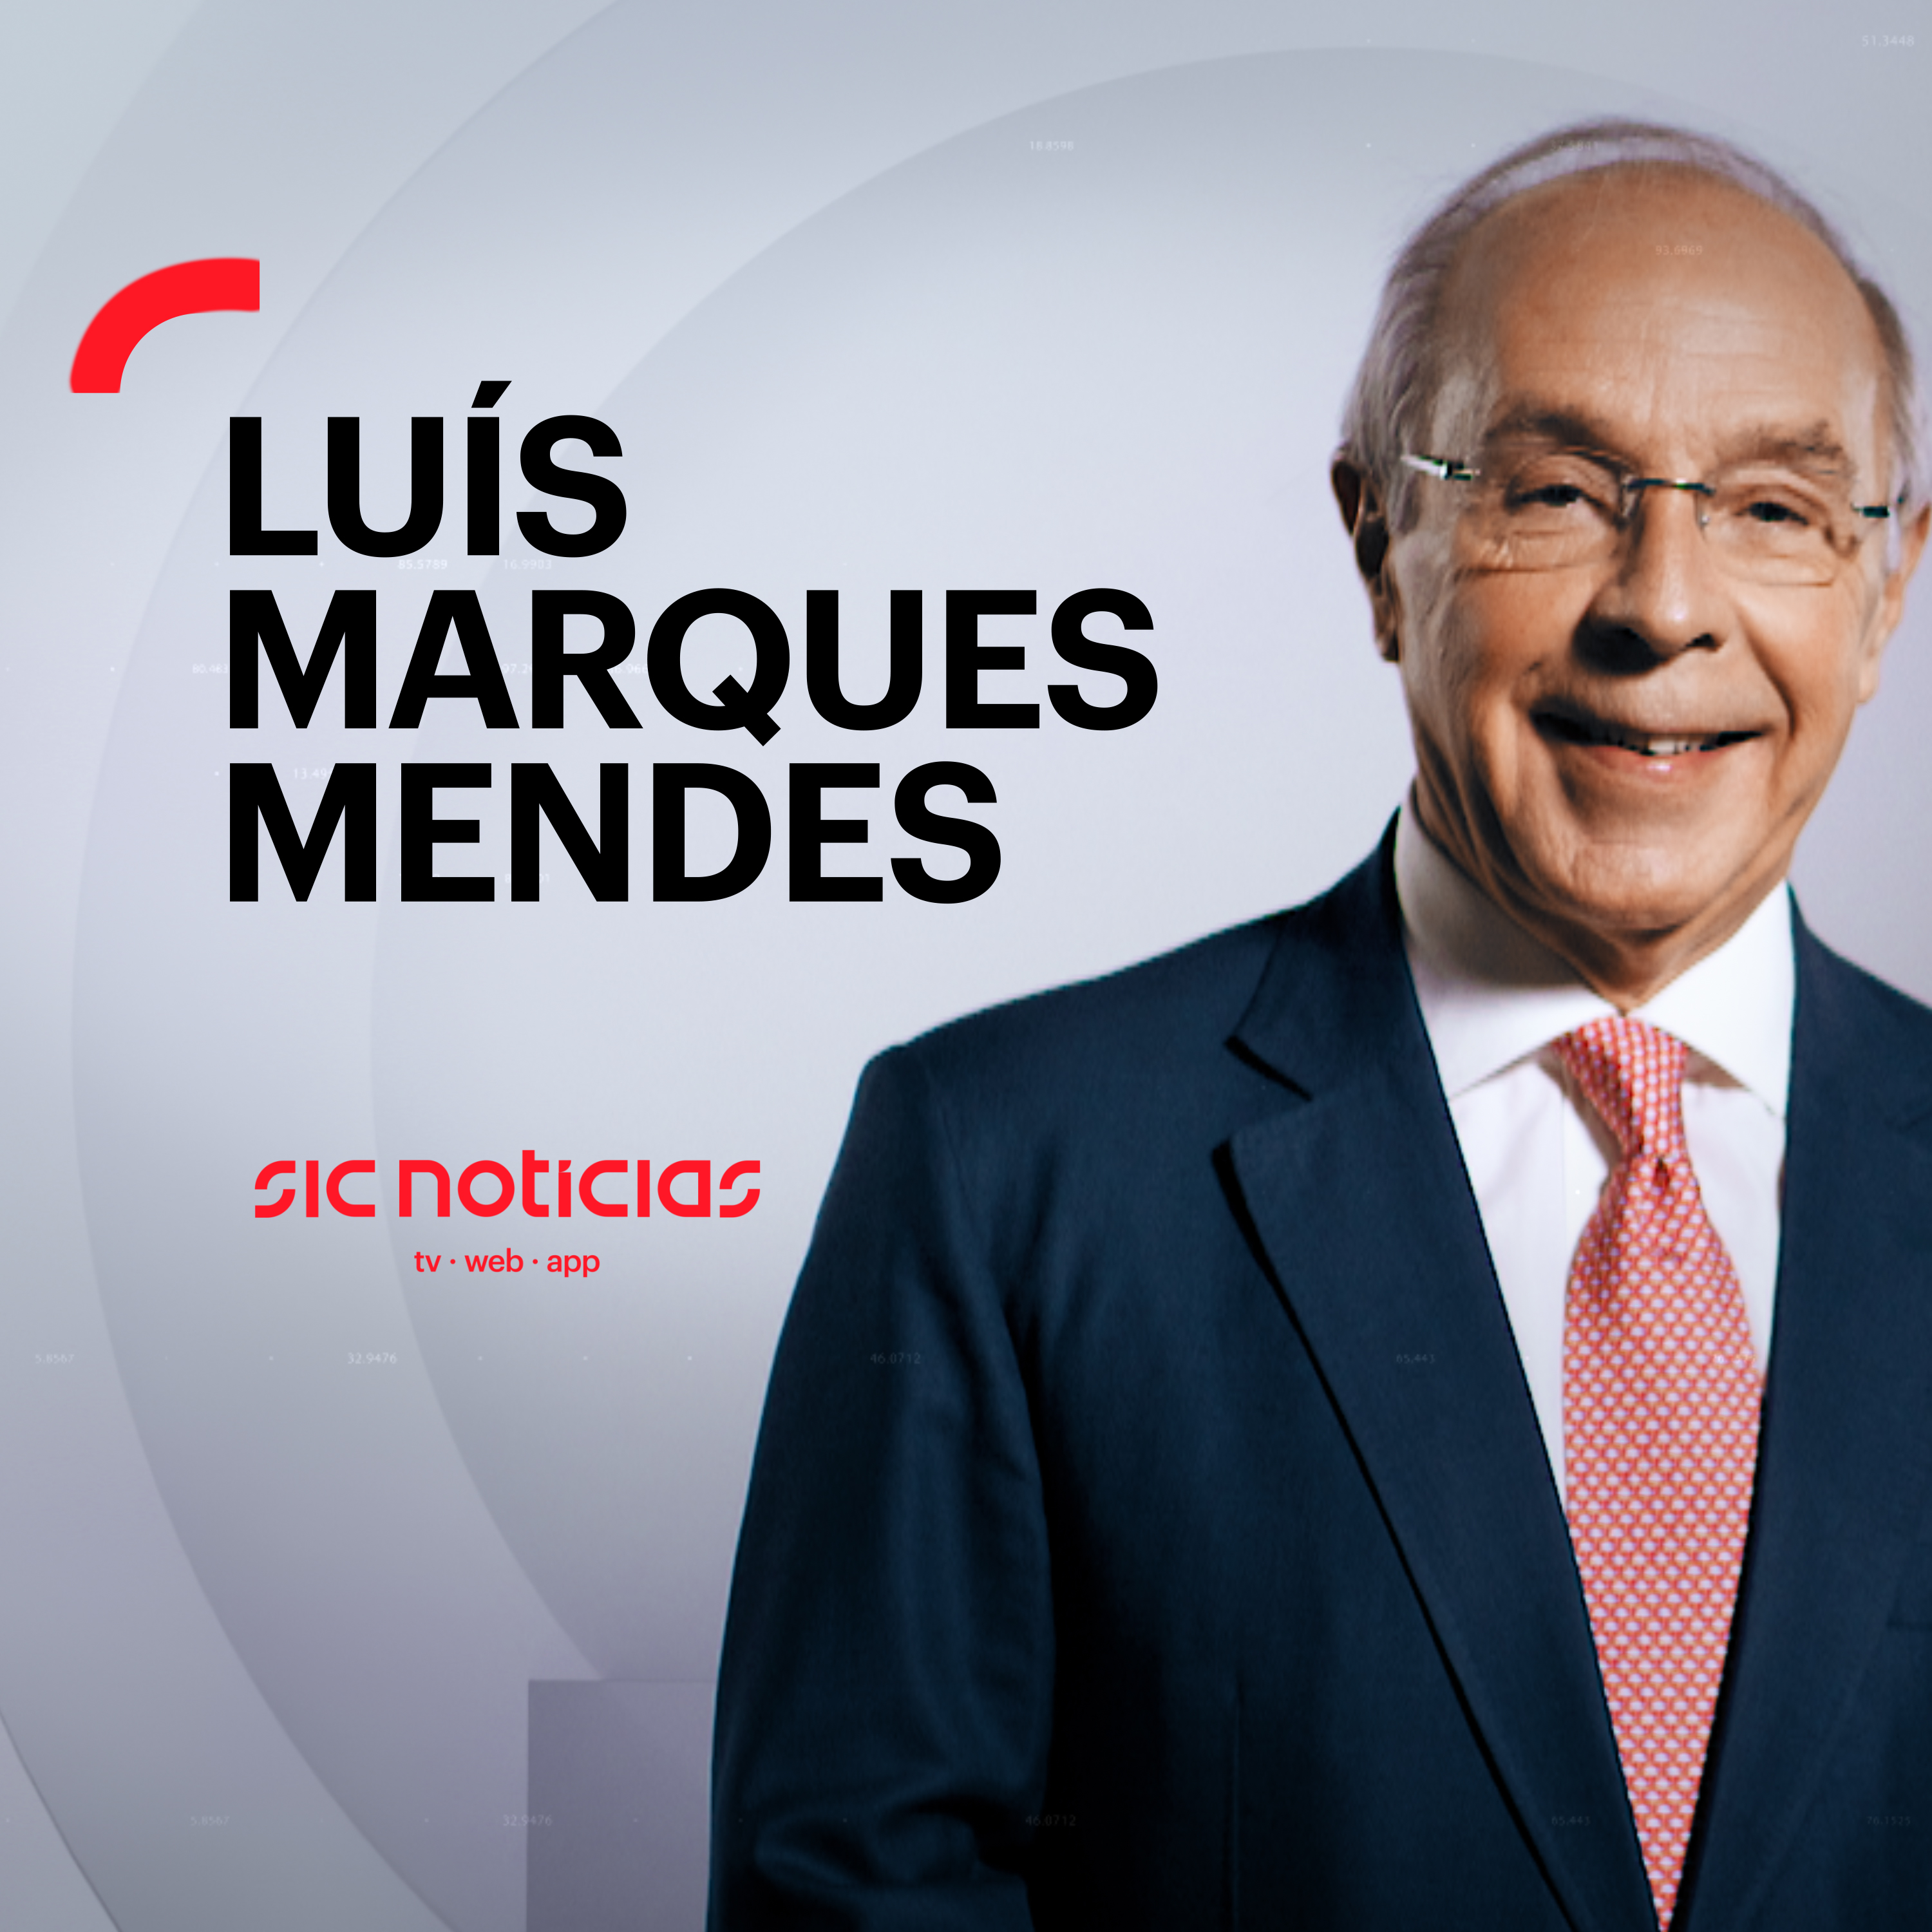 Luís Marques Mendes sobre as medidas de contenção: “Não podemos cair no exagero. Não vamos ter nenhum confinamento”